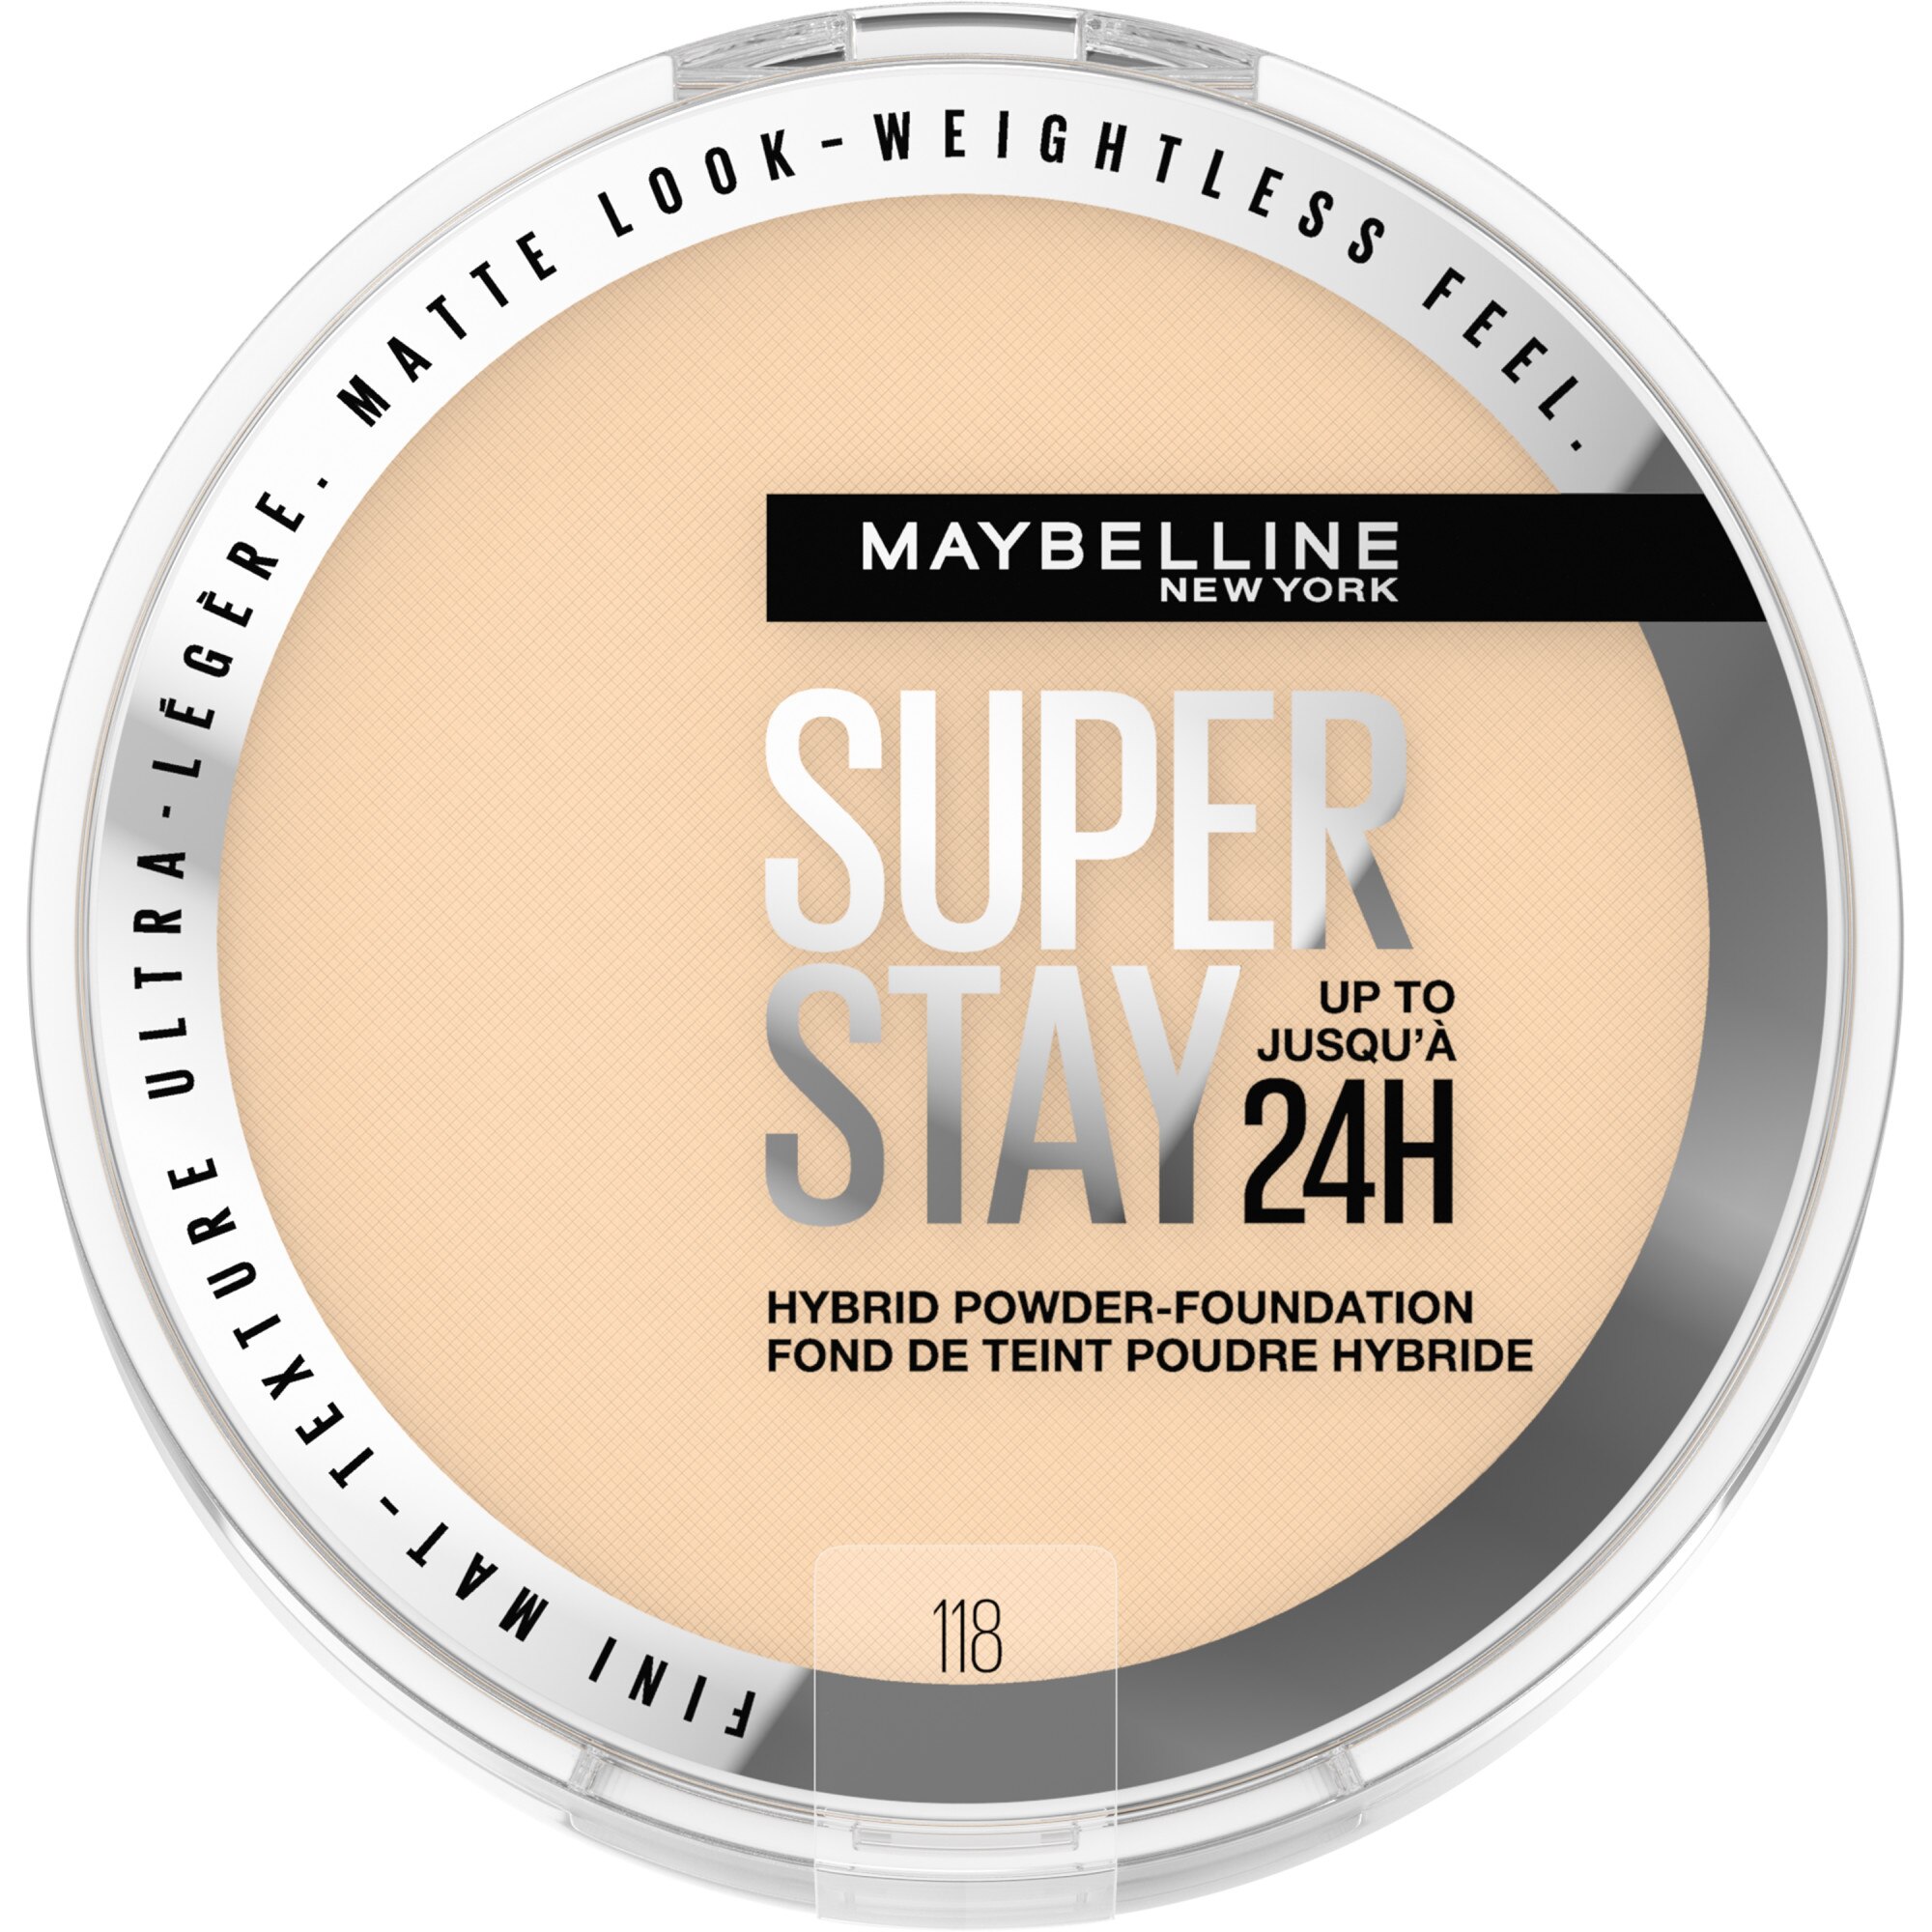 Maybelline New York Super Stay Up To 24HR Hybrid Powder-Foundation, 118, 0.21 Oz , CVS